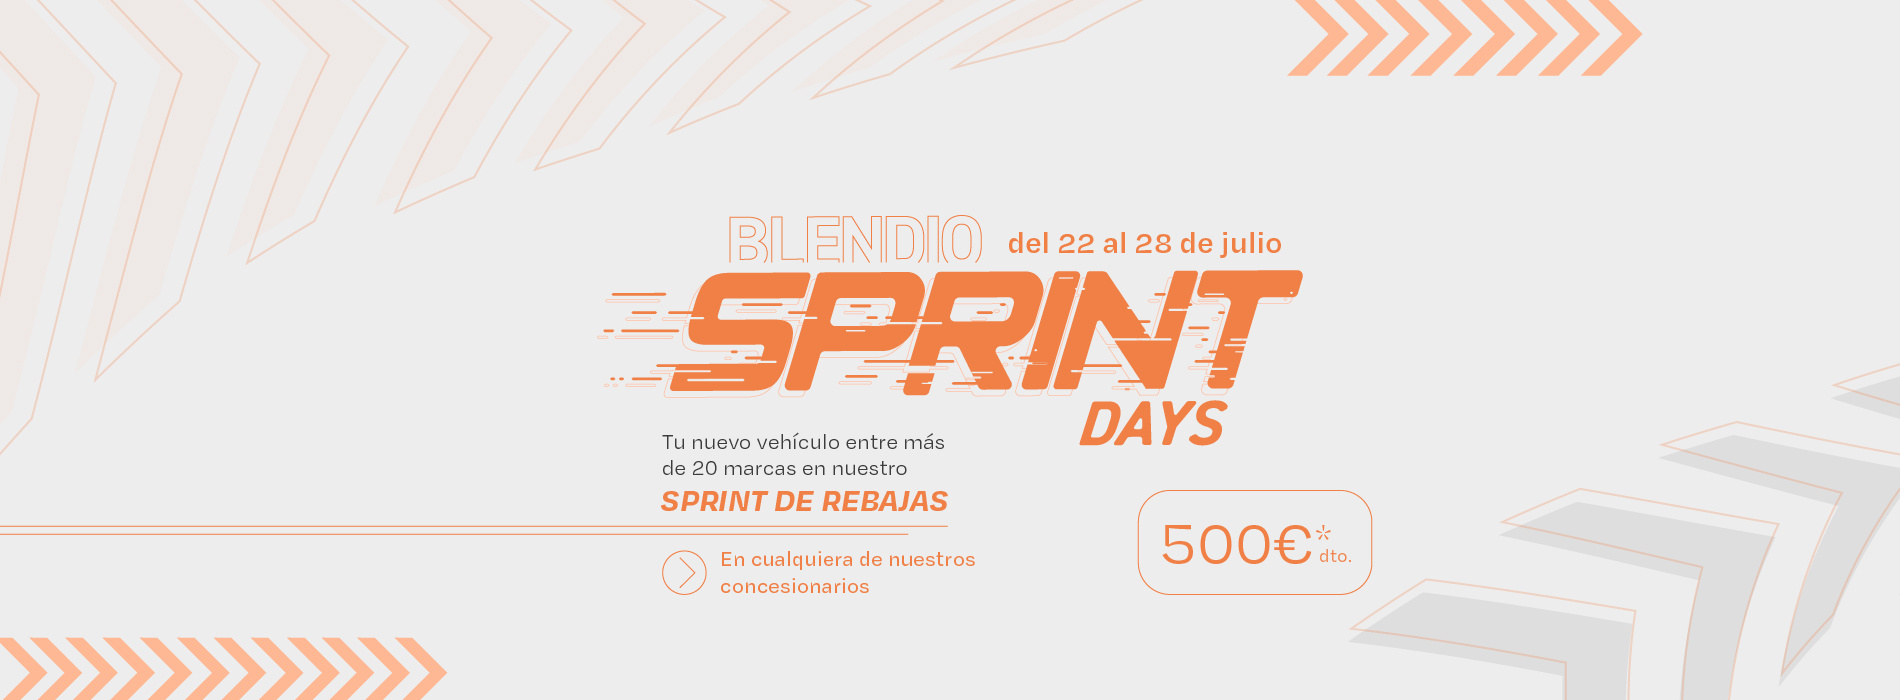 Llegan los Sprint Days a Blendio - Del 22 al 28 de julio